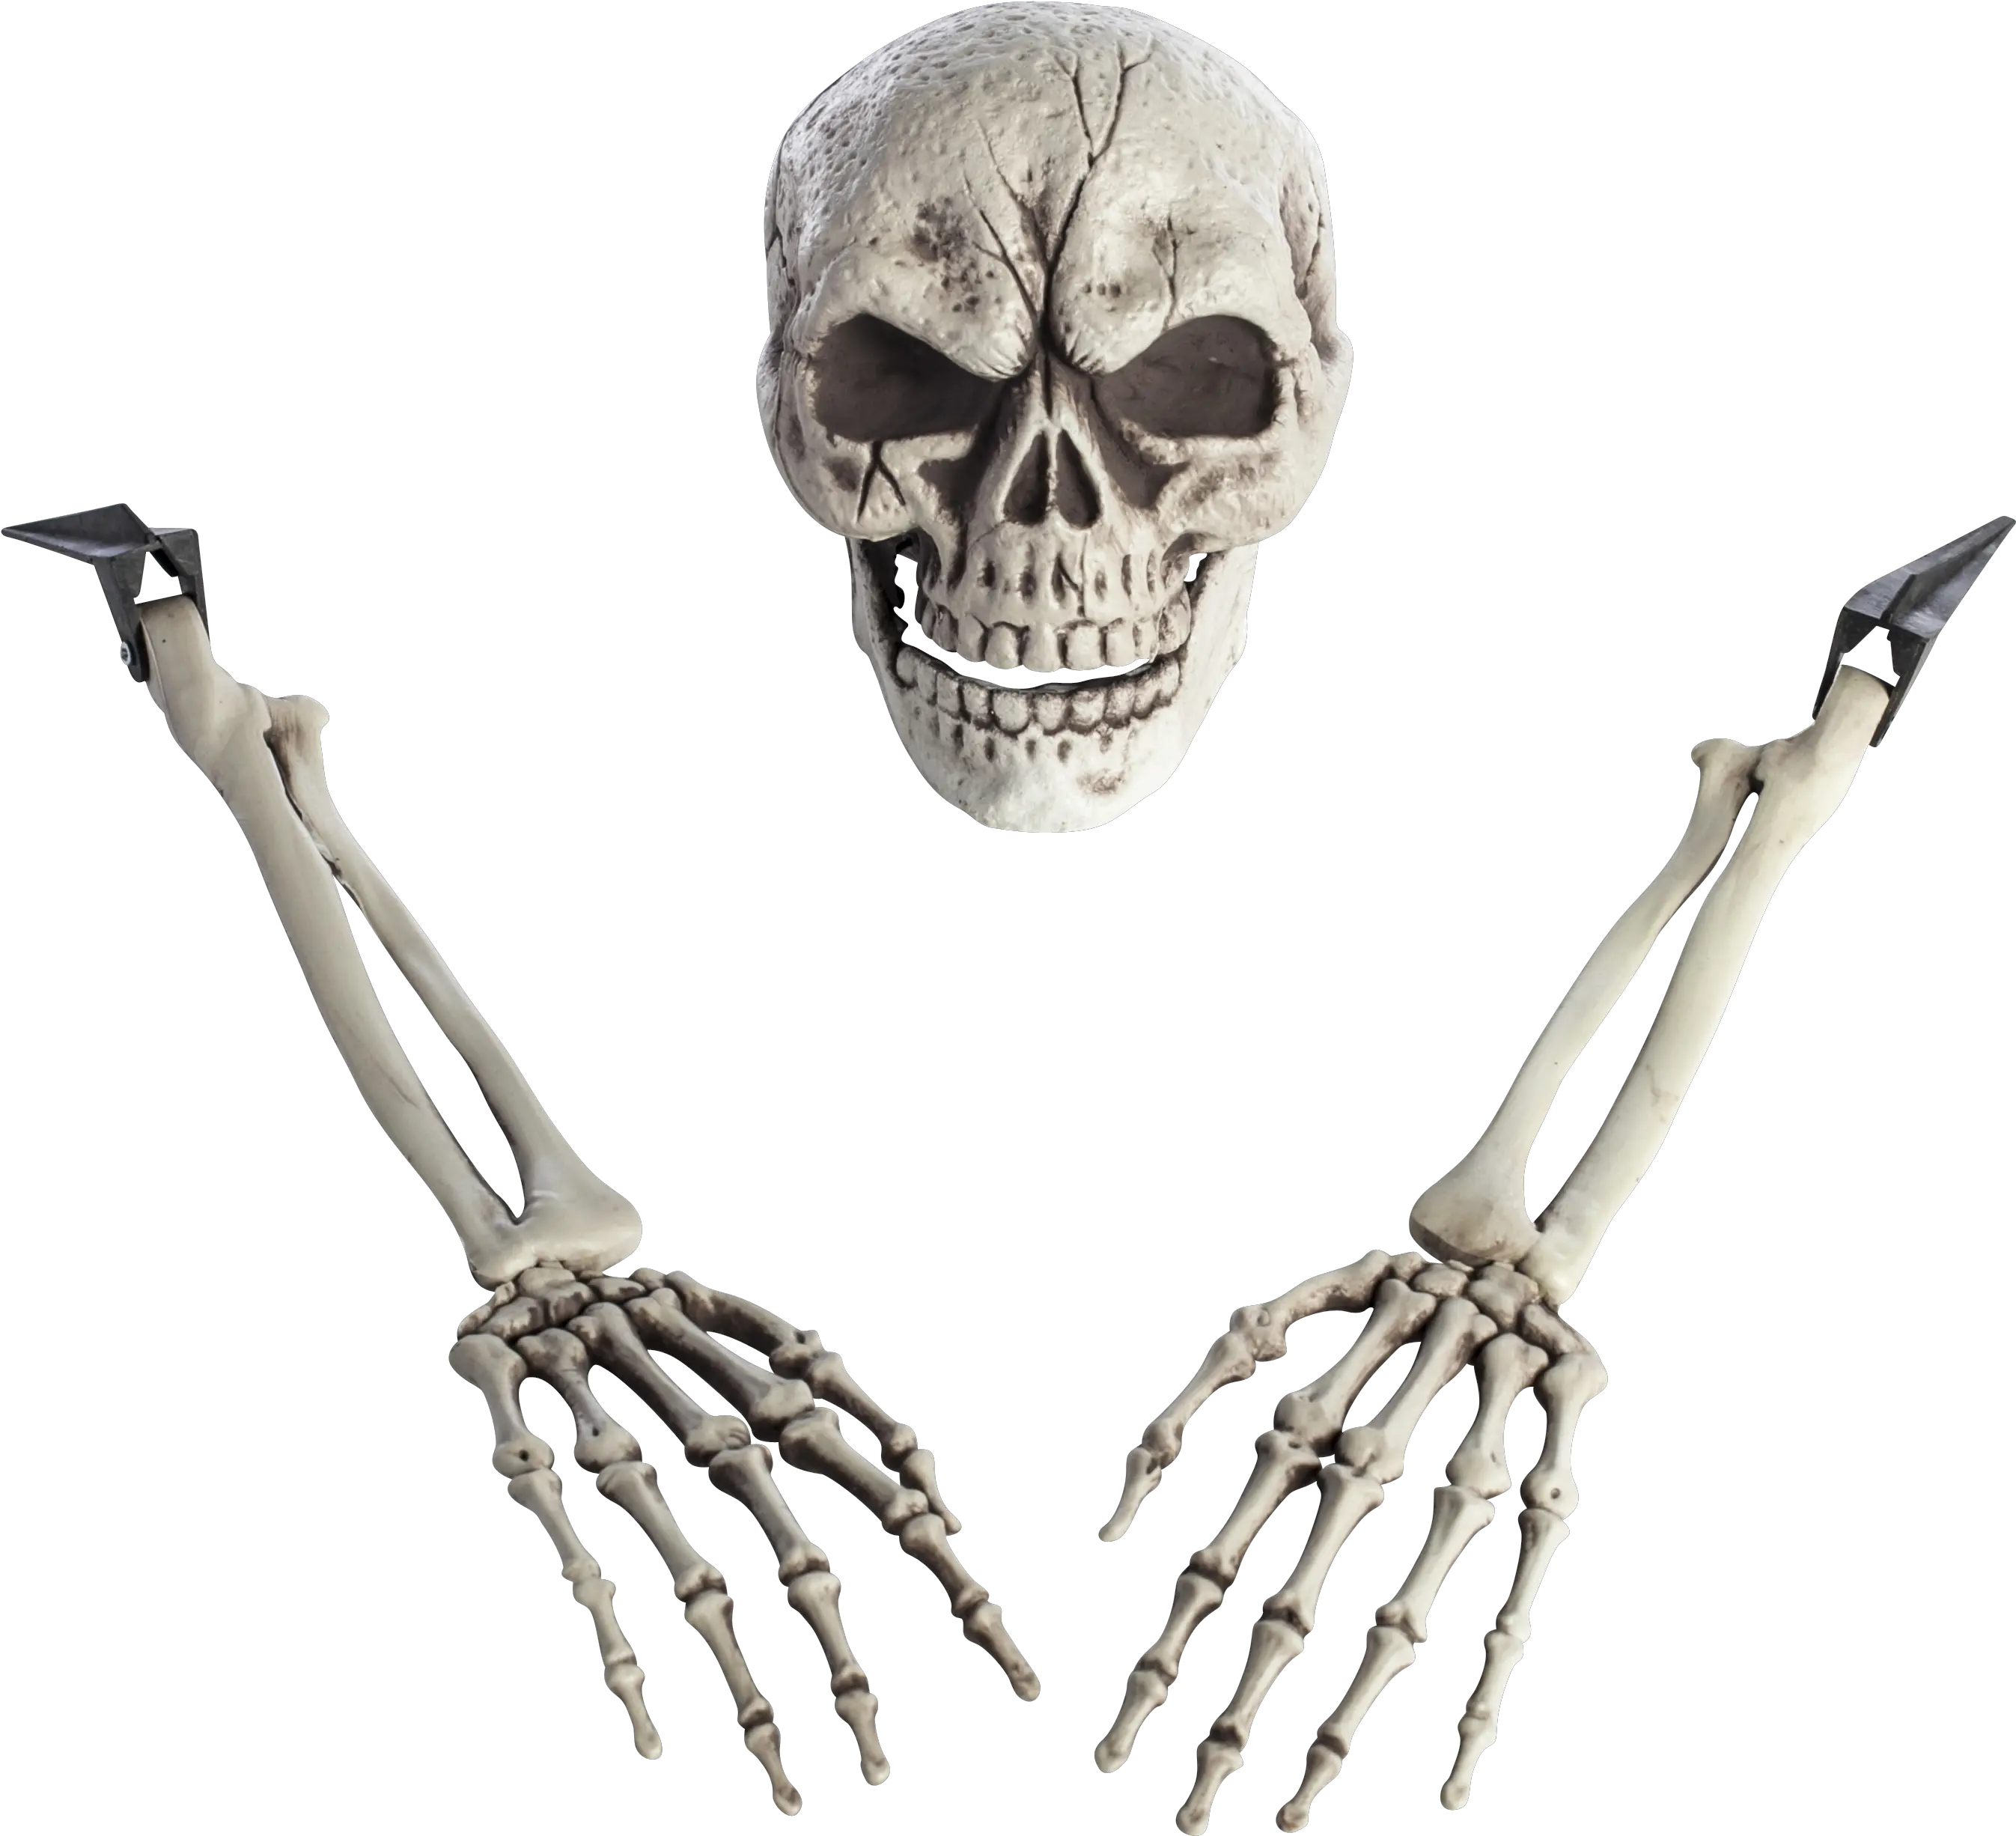 Download Hd Skeleton Arm Png Transparent Image Nicepngcom Skeleton Skeleton Png Transparent